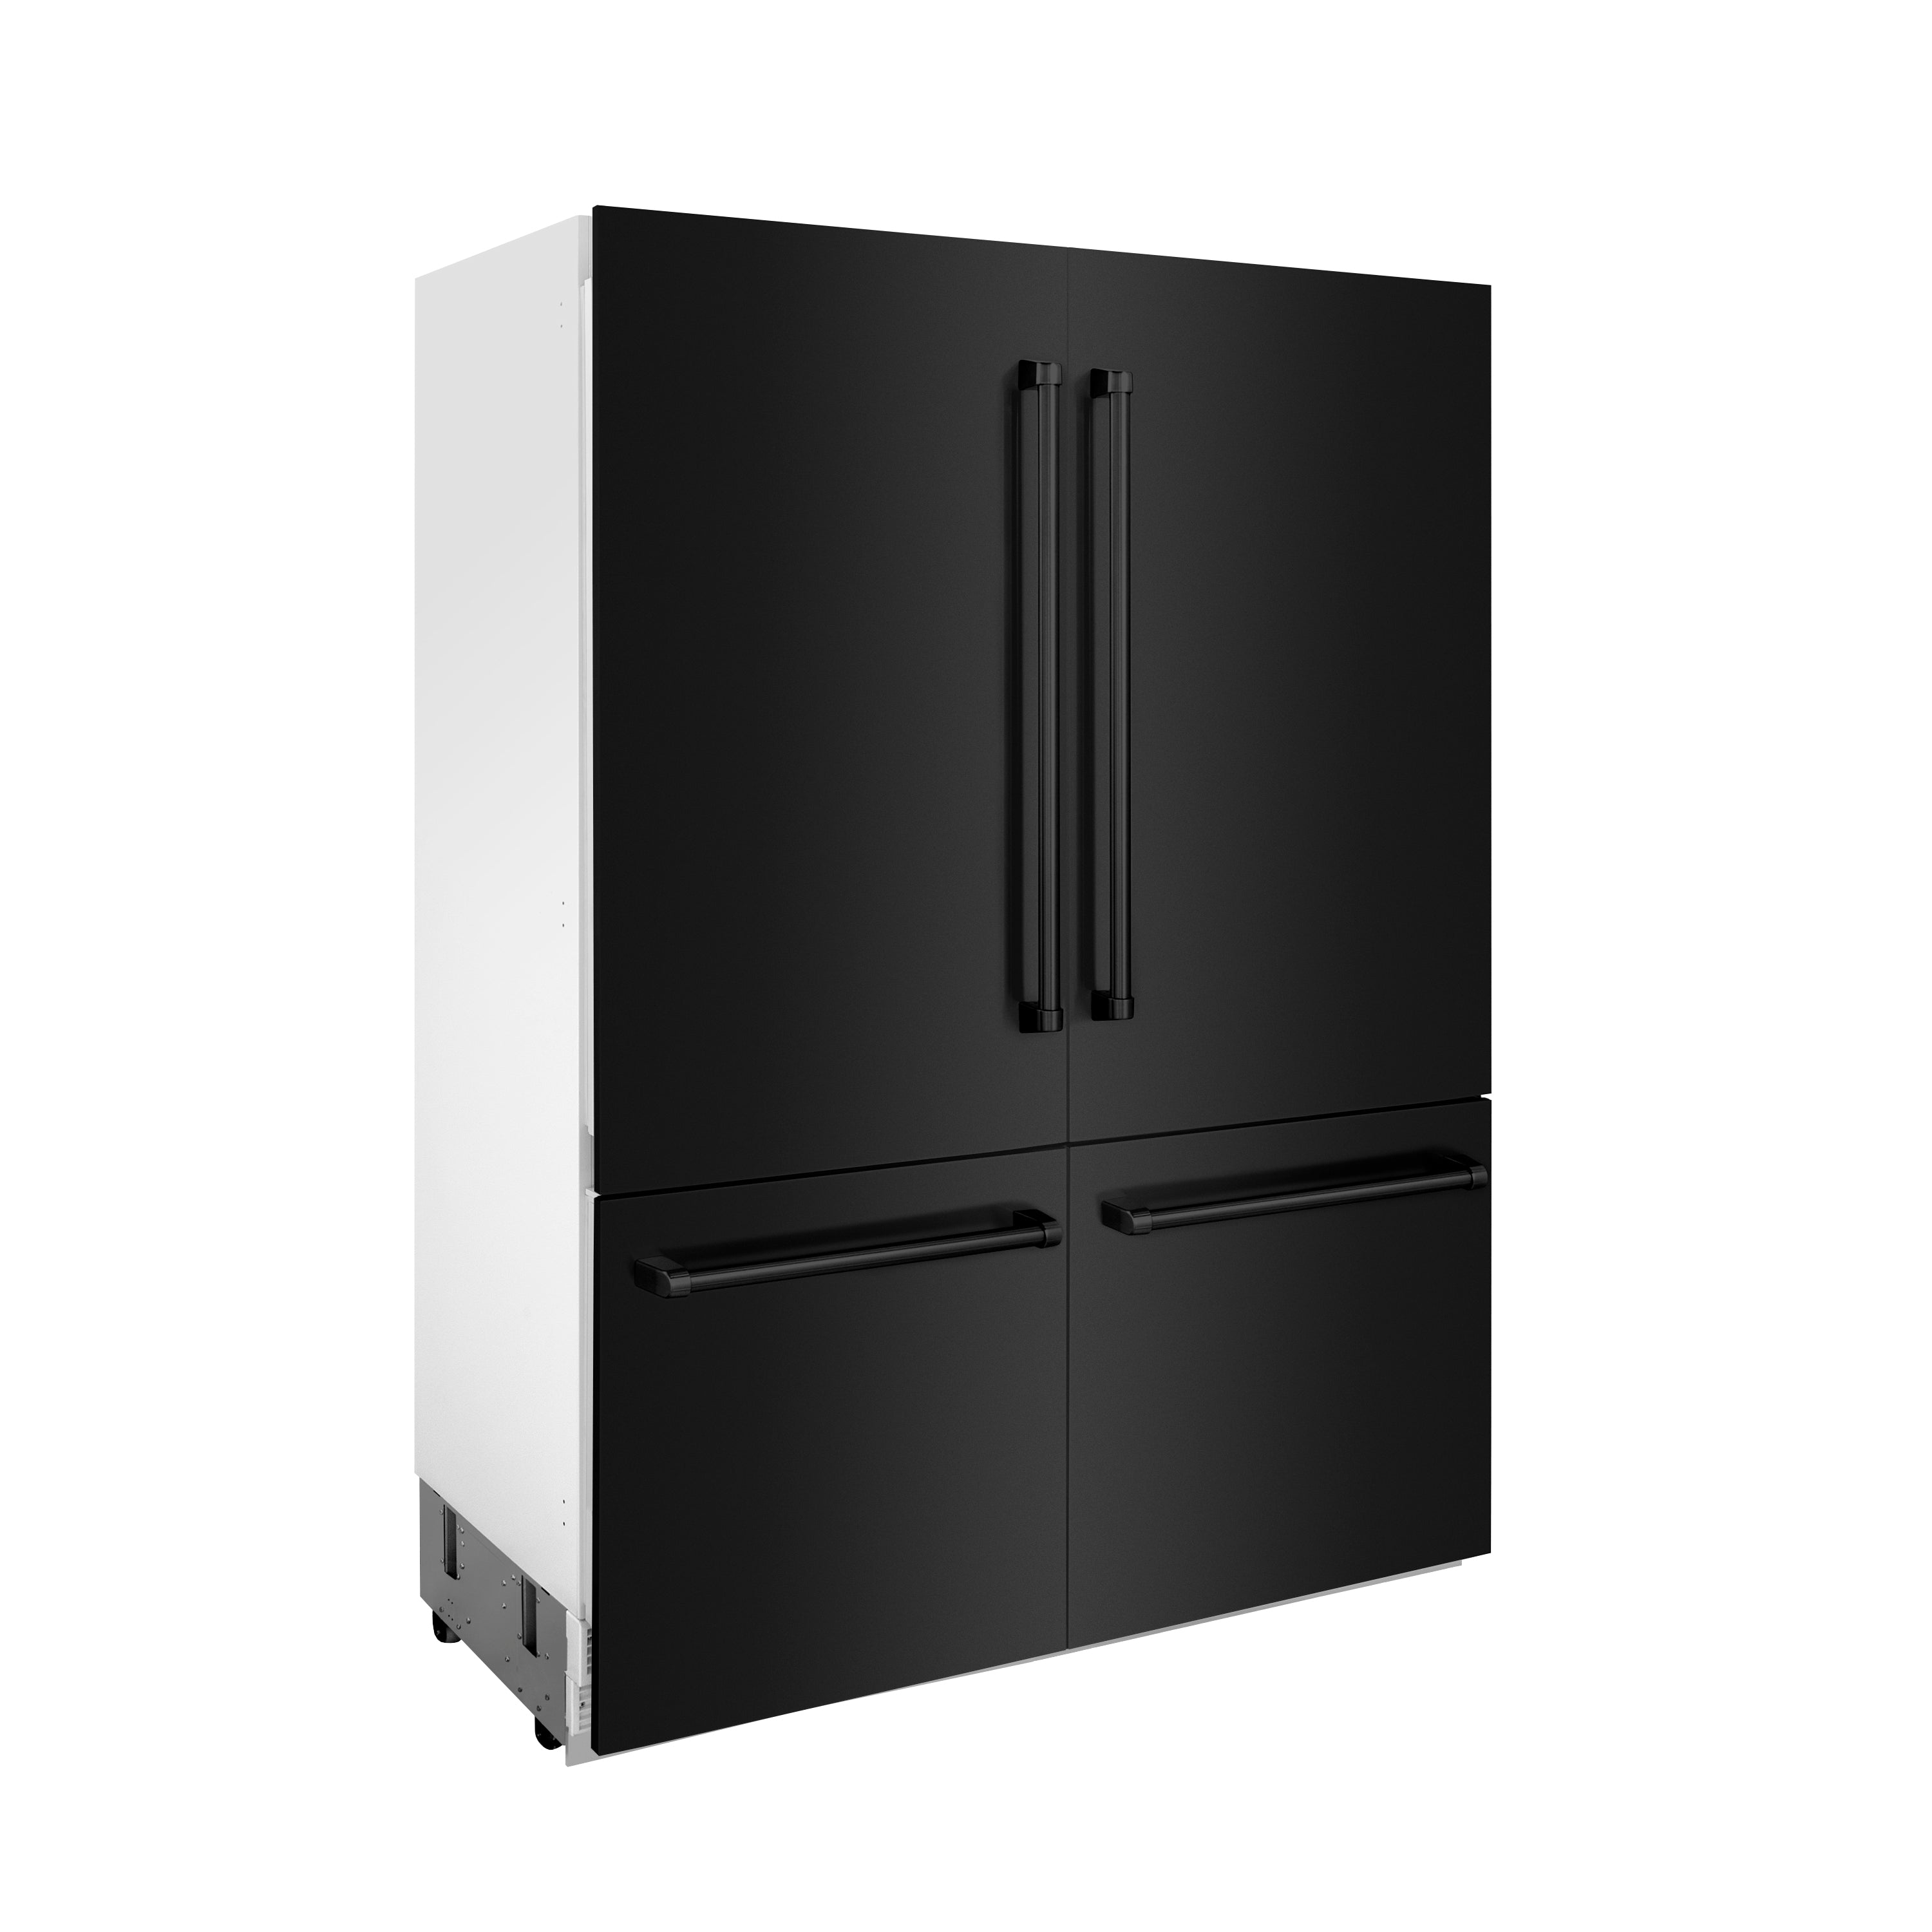 ZLINE 60 in. 32.2 cu. ft. Built-In 4-Door French Door Refrigerator with Internal Water and Ice Dispenser in Black Stainless Steel (RBIV-BS-60)